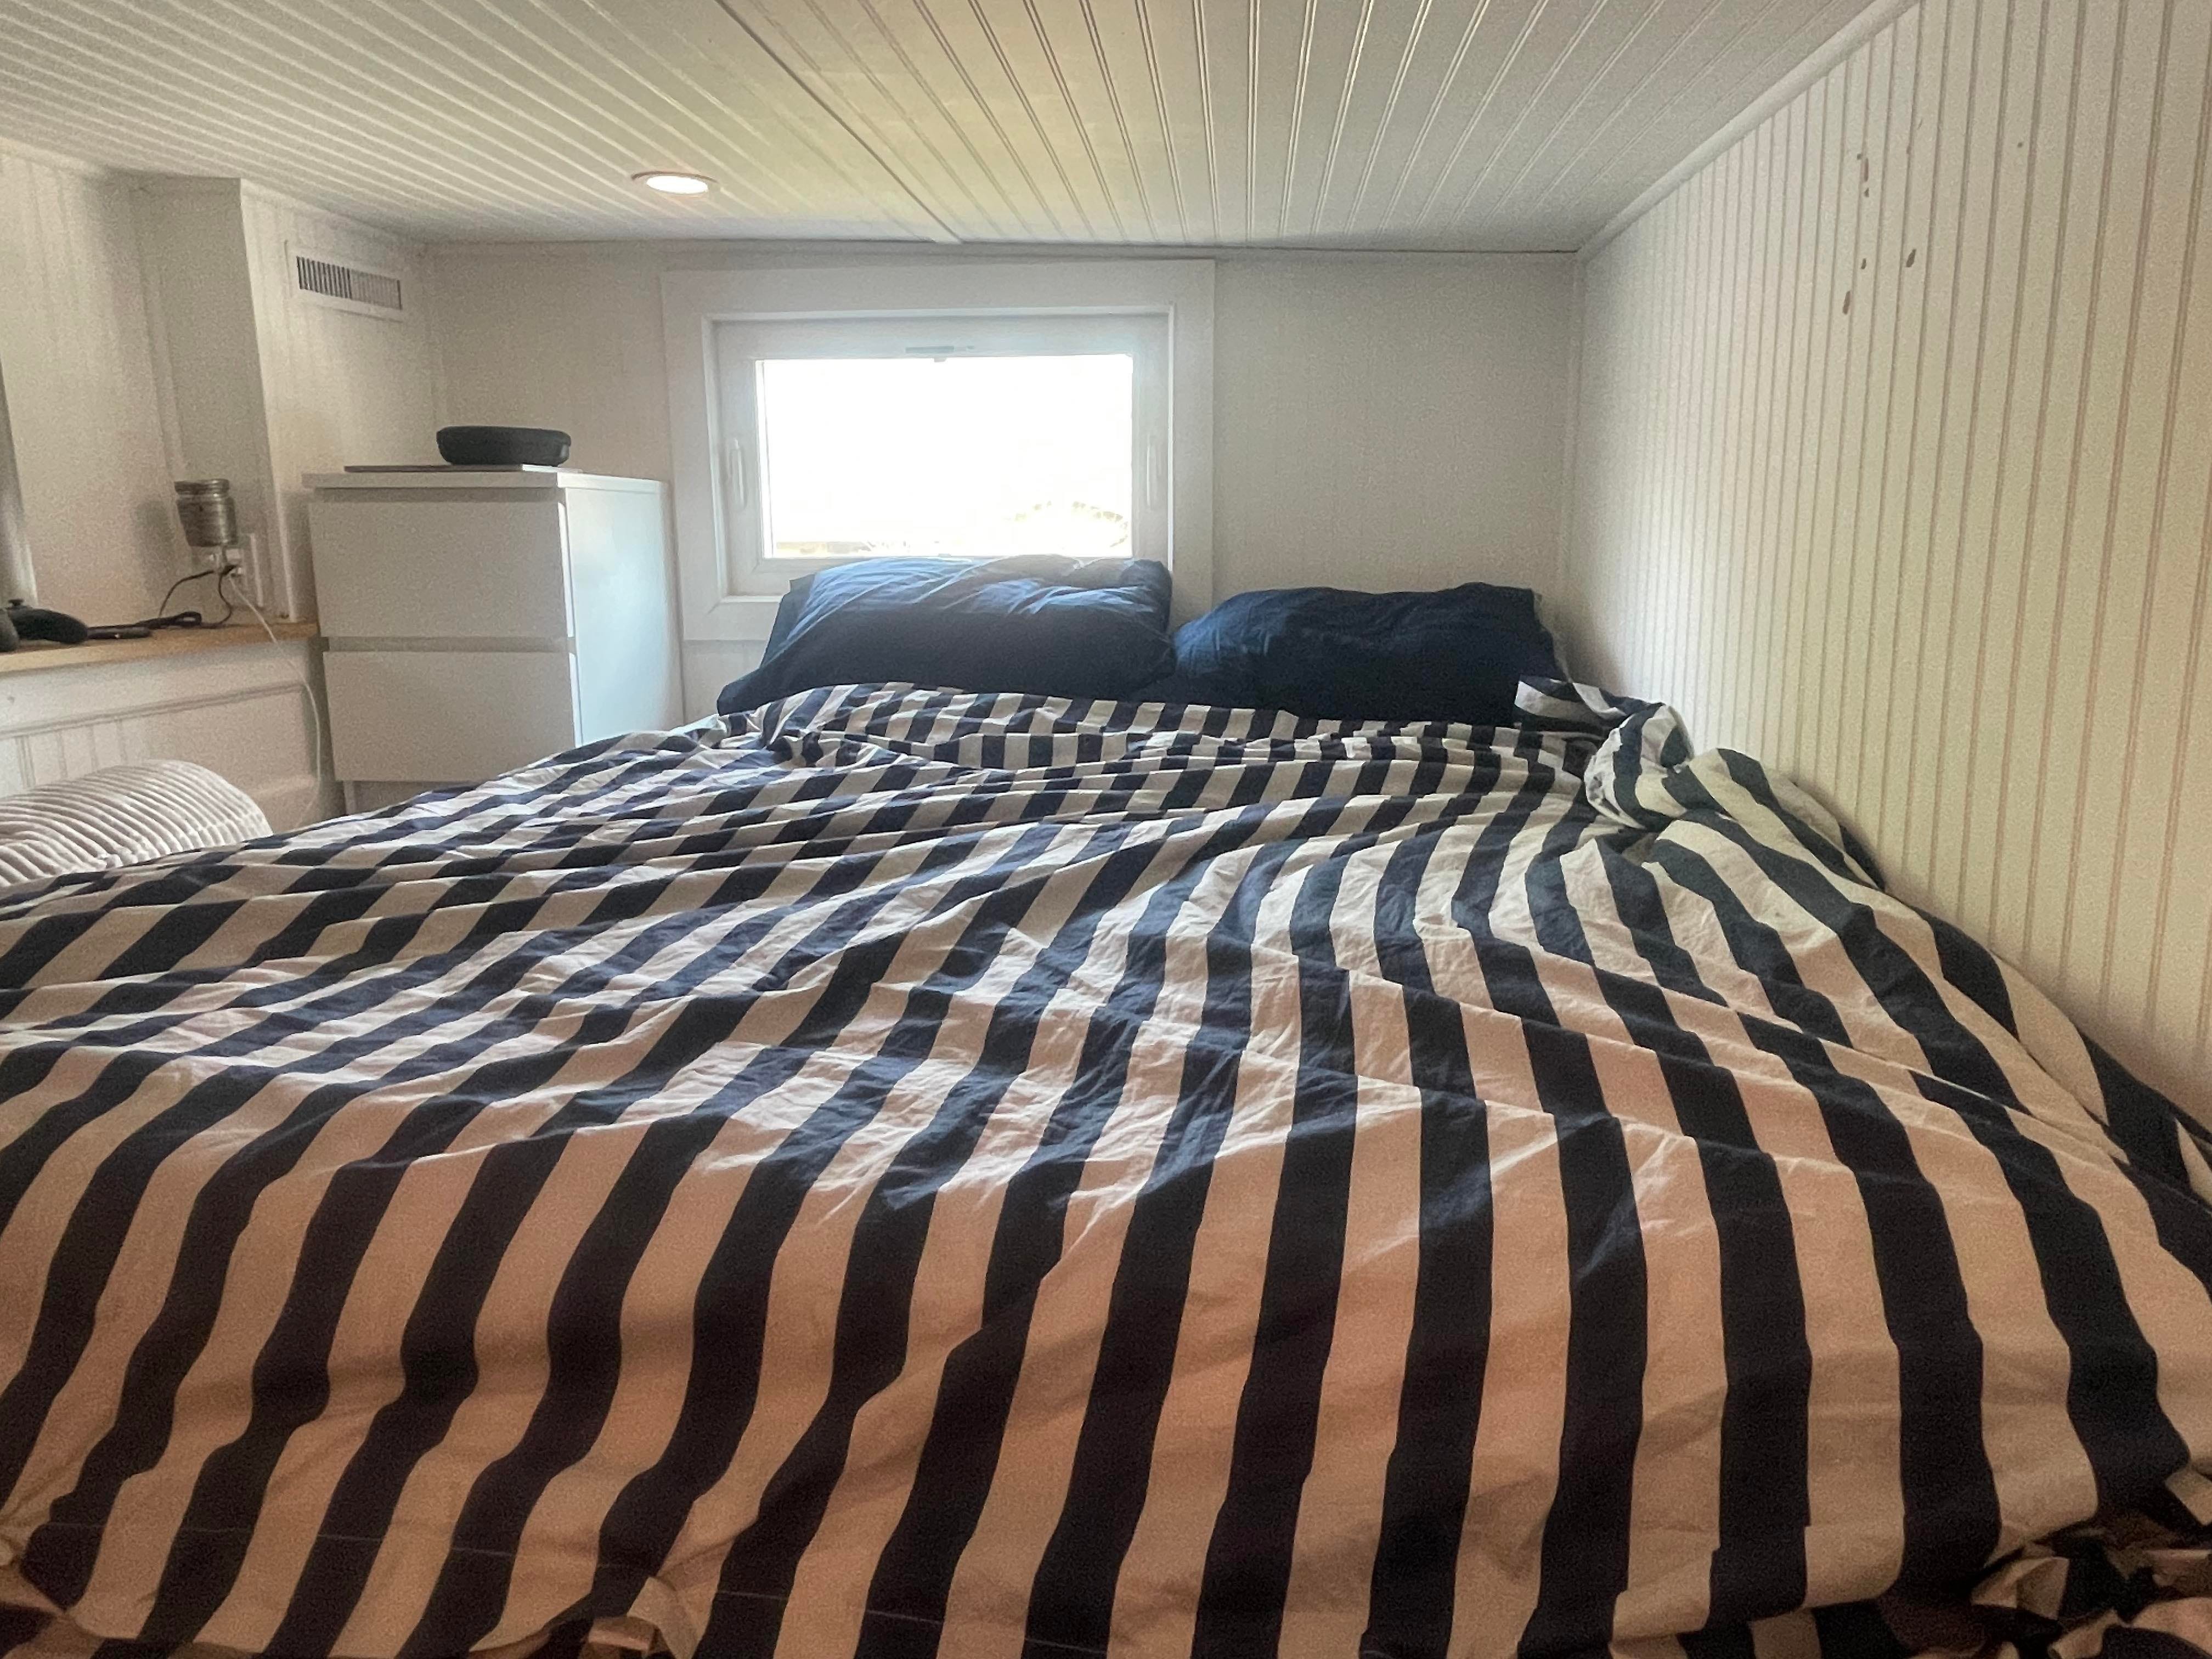 Ein Bett mit einer marineblau-weiß gestreiften Bettdecke